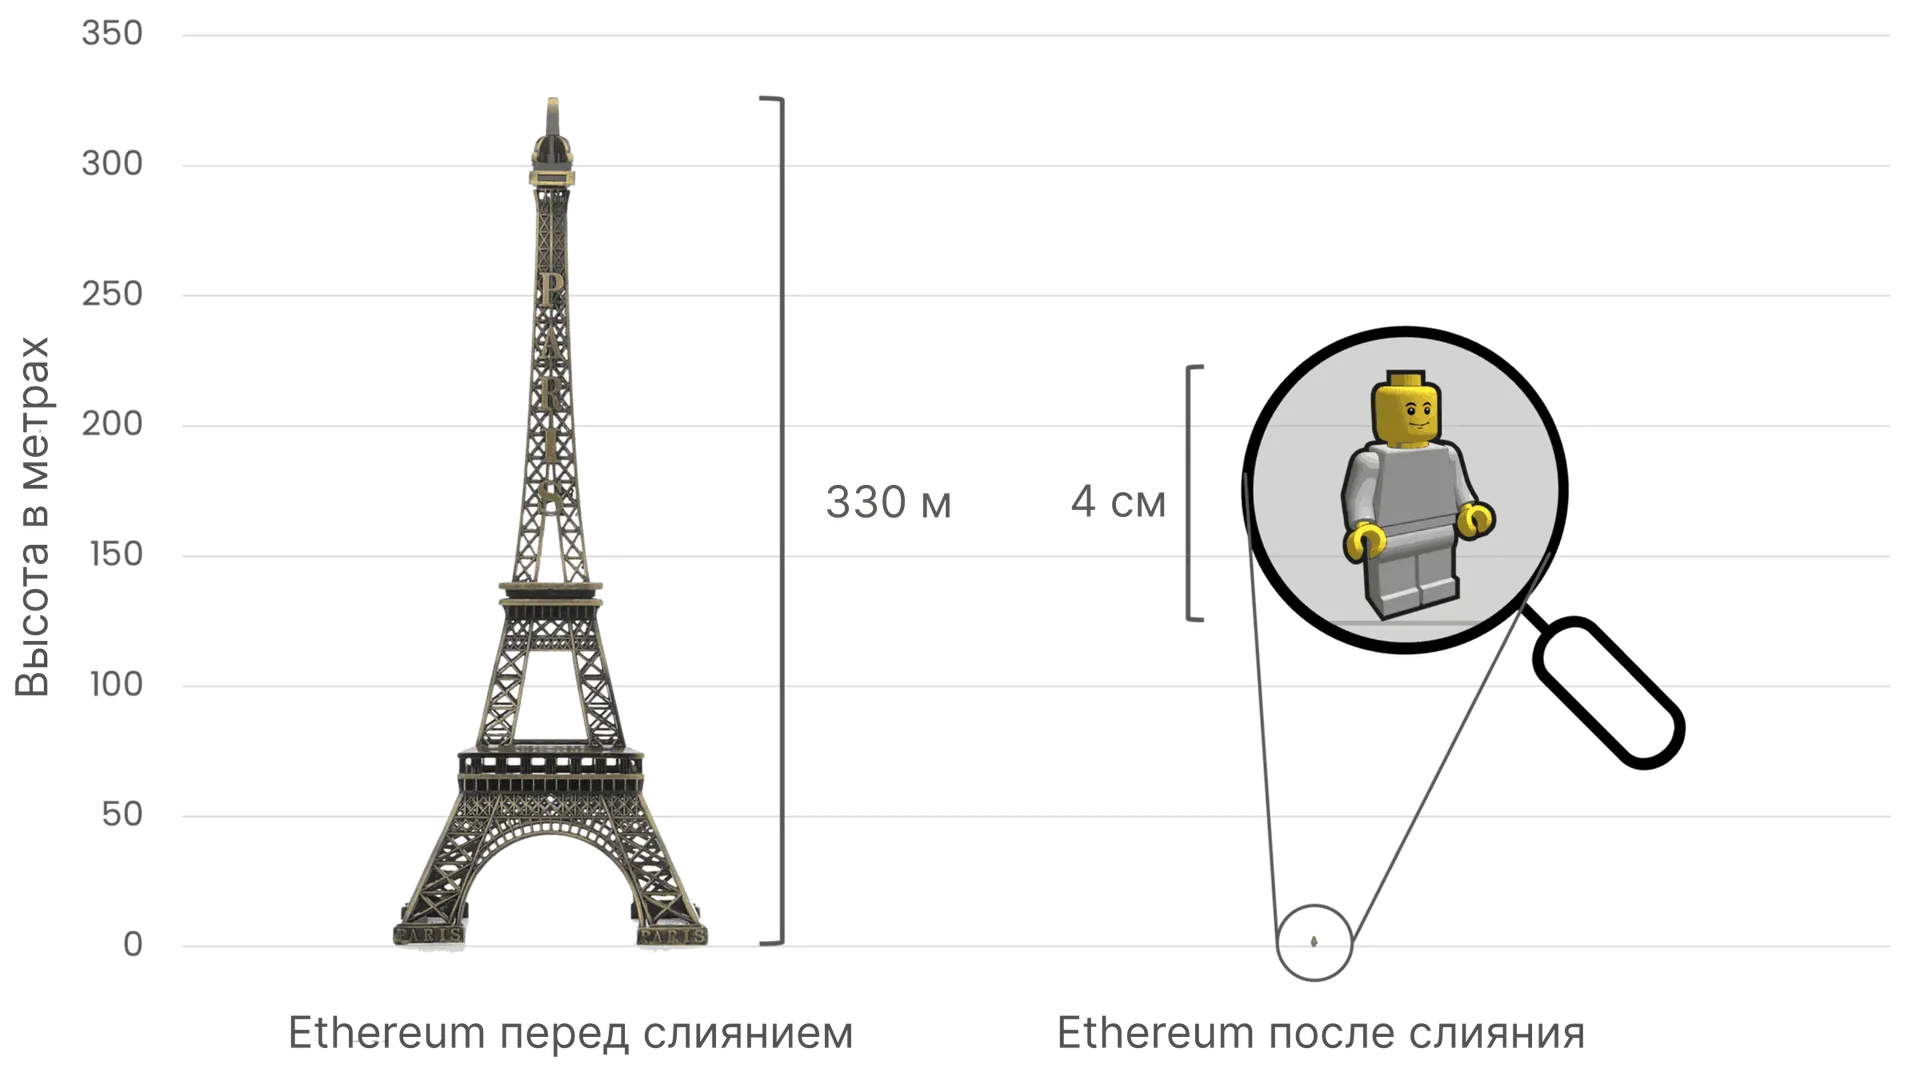 Сравнение энергопотребления сетью Ethereum перед слиянием и после него. Эйфелева башня (330 метров в высоту) слева символизирует энергопотребление до слияния, а маленькая фигурка Lego (4 сантиметра в высоту) справа демонстрирует огромное уменьшение энергопотребления после слияния.